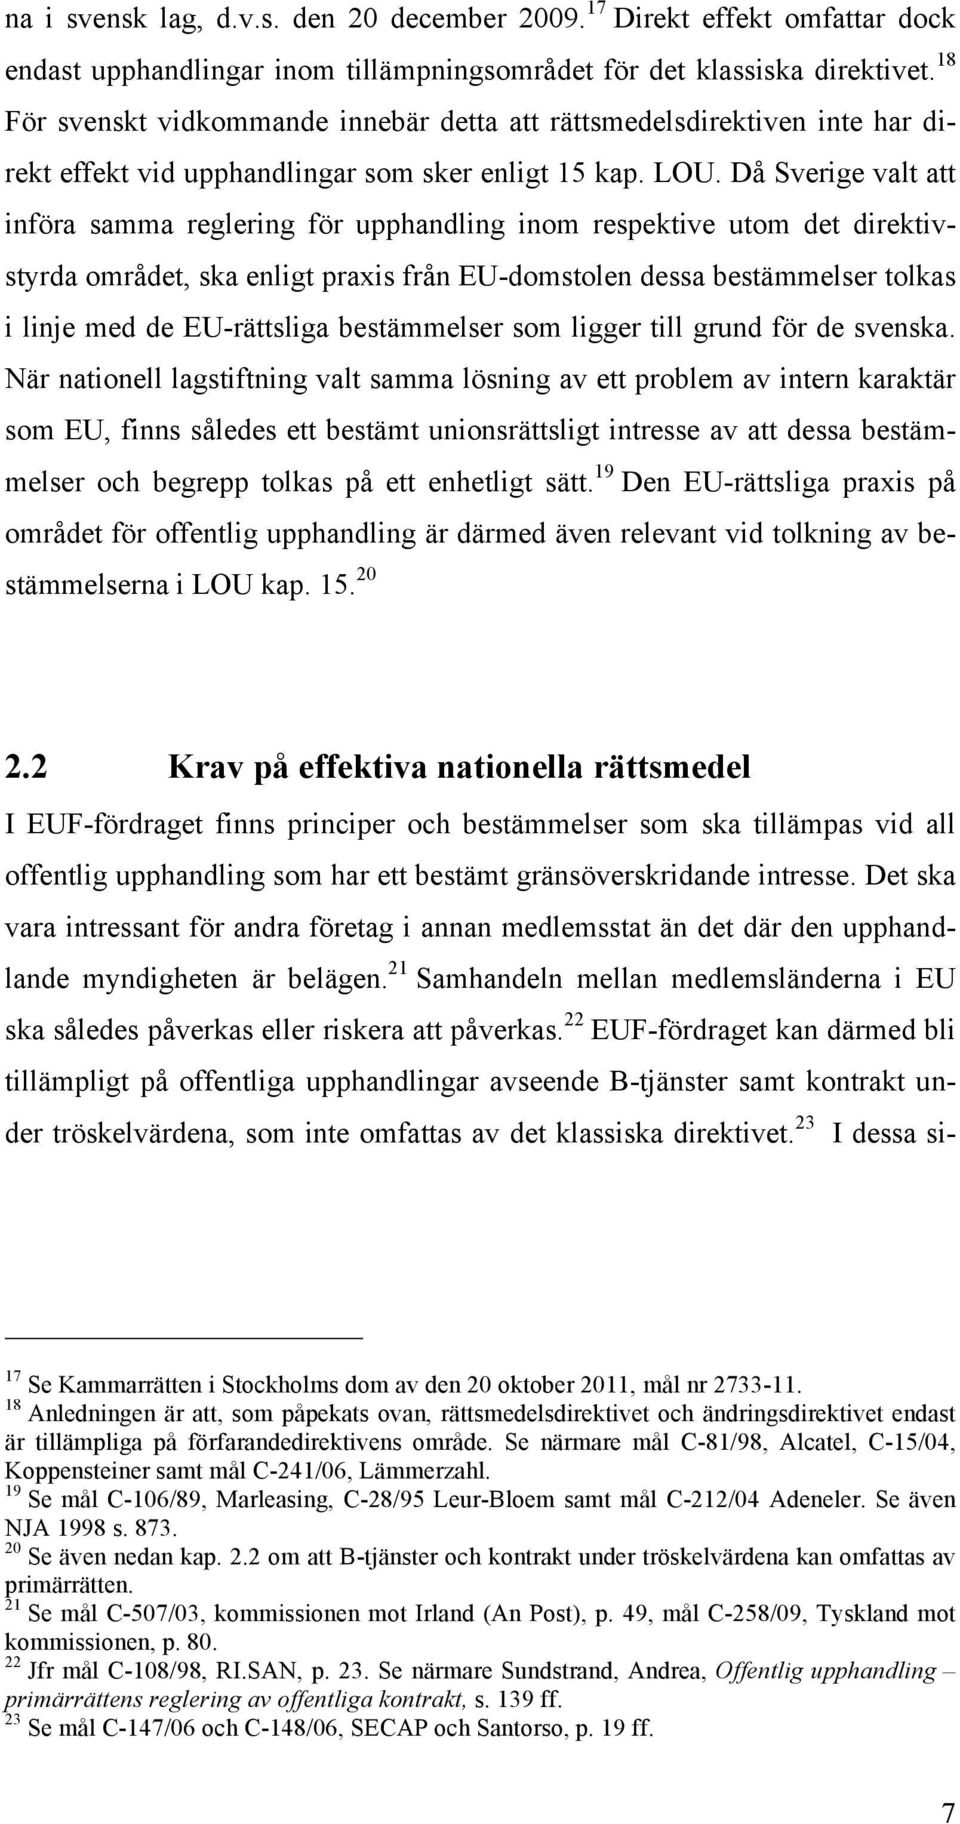 Då Sverige valt att införa samma reglering för upphandling inom respektive utom det direktivstyrda området, ska enligt praxis från EU-domstolen dessa bestämmelser tolkas i linje med de EU-rättsliga